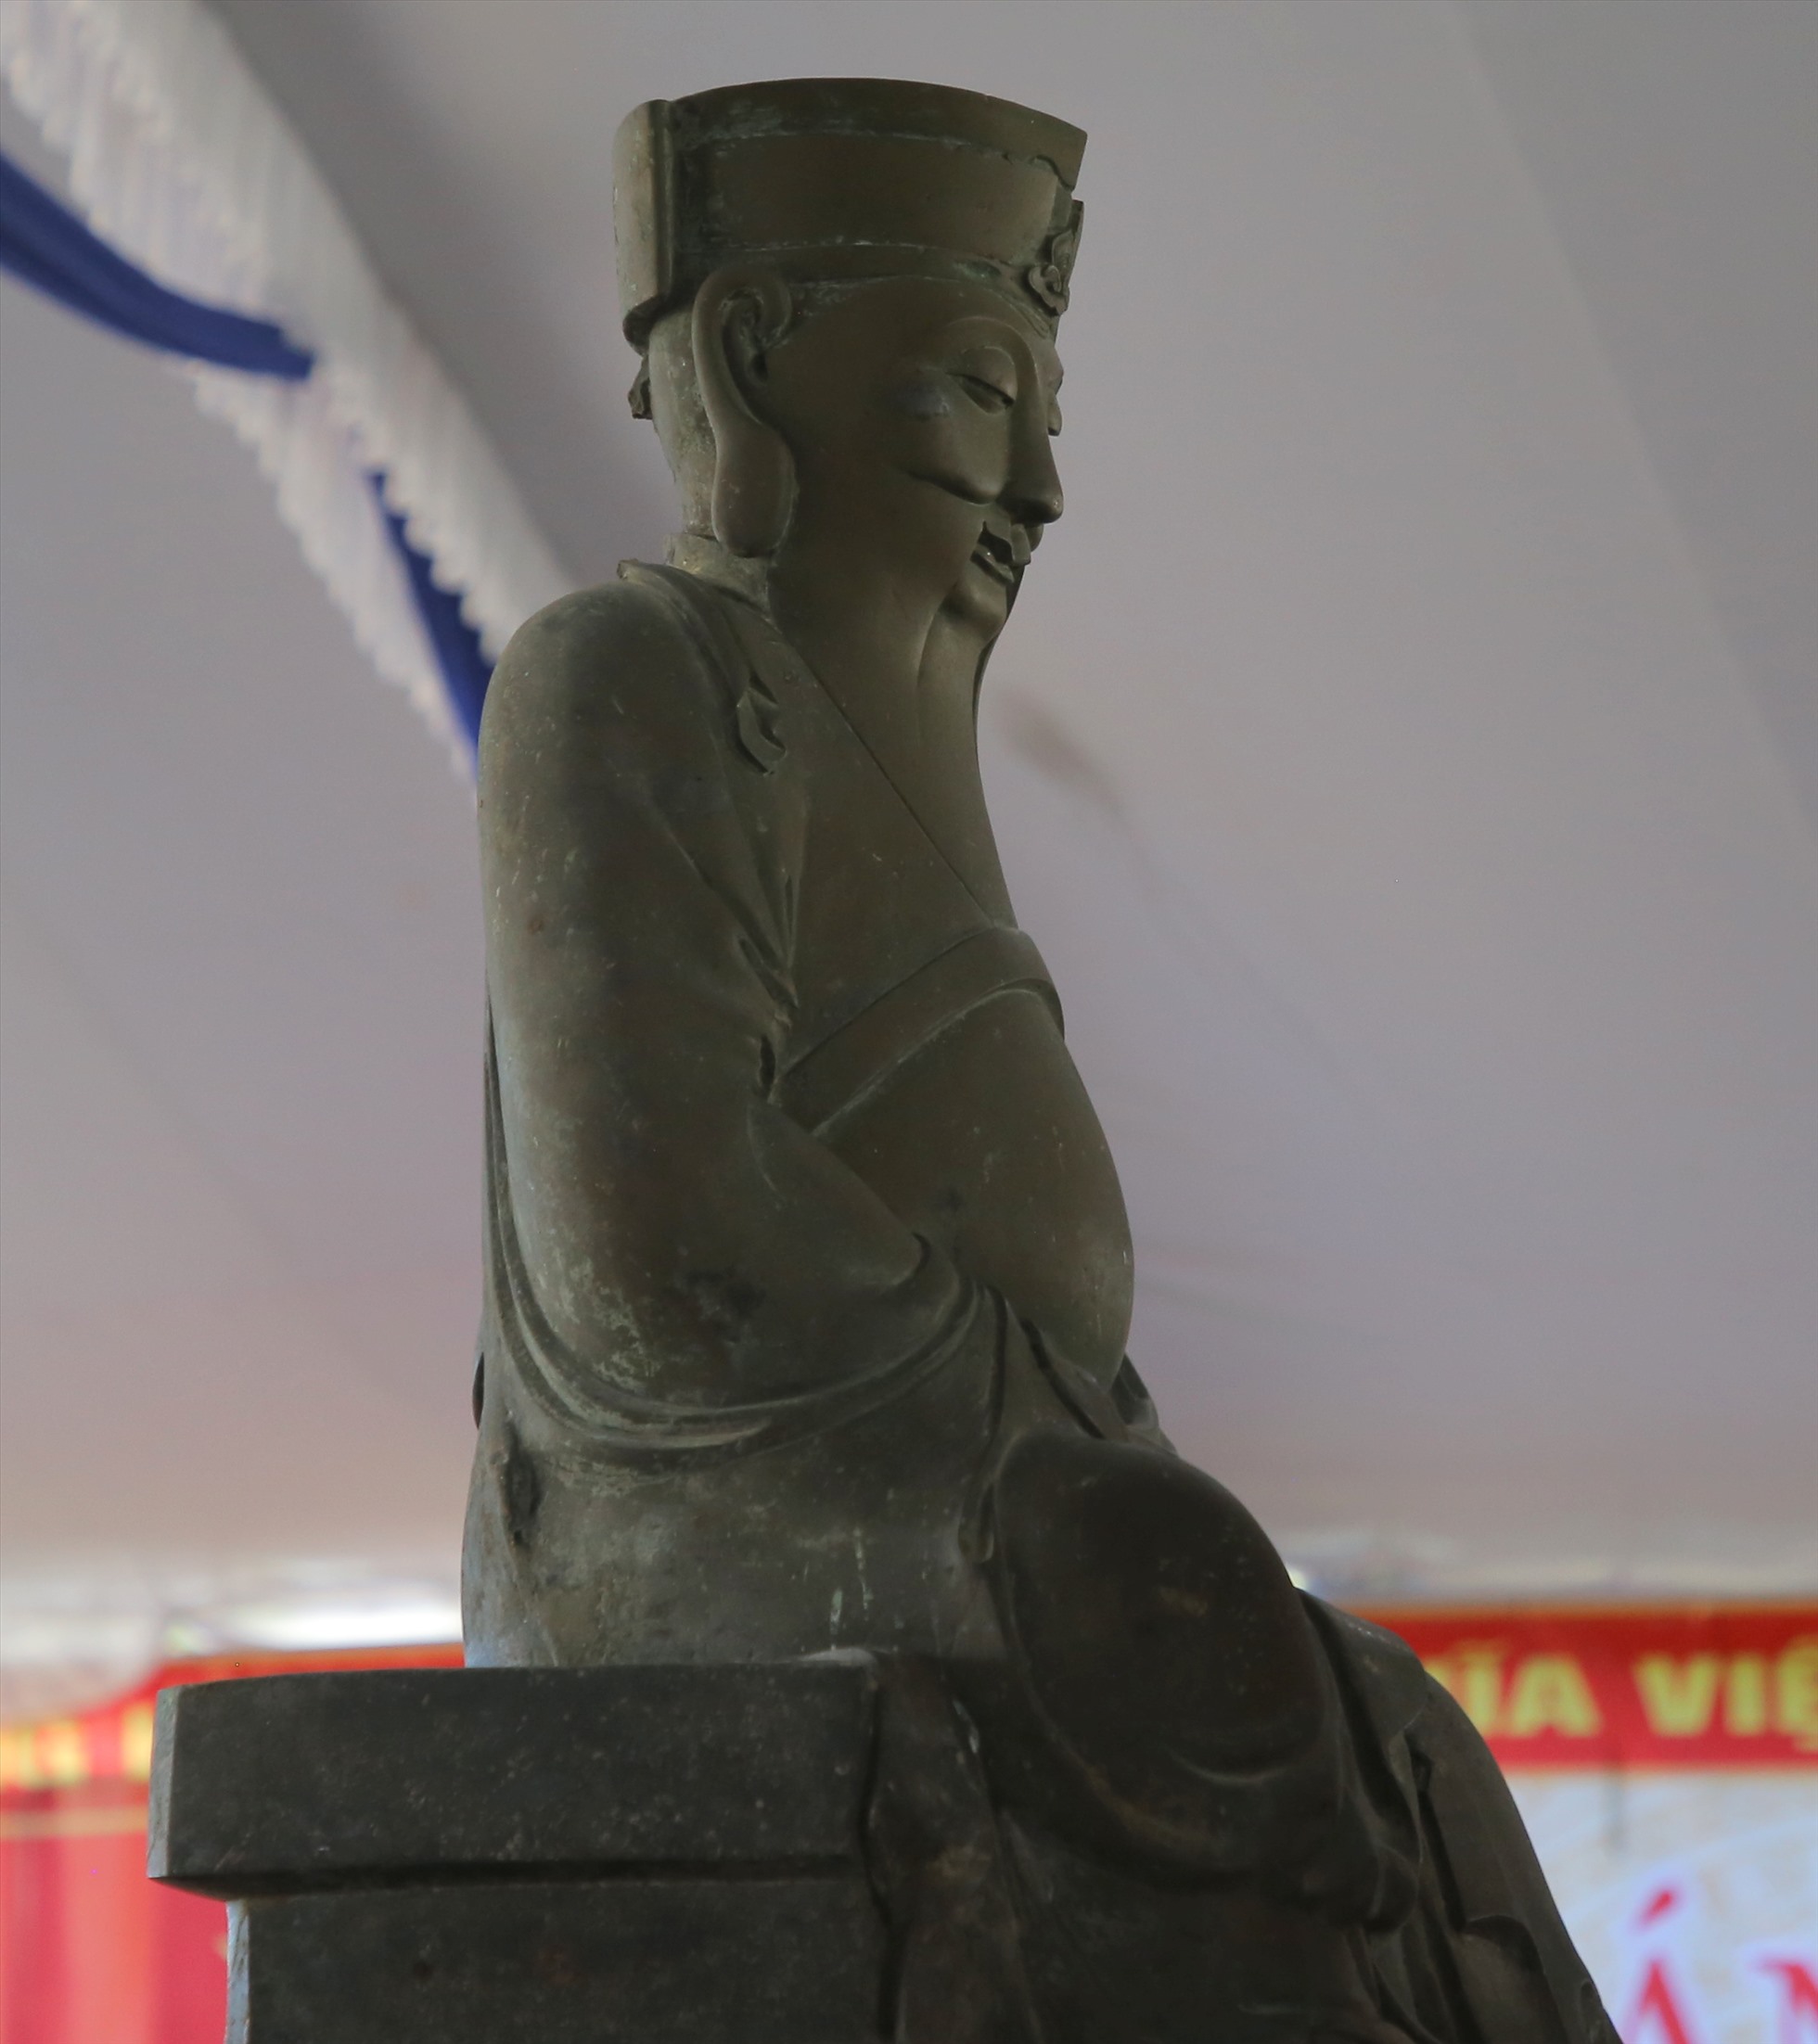 Khi phát hiện ra pho tượng, dân làng Trà Liên không biết tượng là ai nên coi là tượng Phật và đặt thờ trong ngôi chùa có tên Liễu Bông (còn gọi là Liễu Ba) được dựng lên trong khu vực trước đây là cung Phúc Châu - trung tâm Dinh Cát. Theo các vị cao niên làng Trà Liên kể lại, từ ngày thờ pho tượng, dân làng như được che chở, an yên, gặp nhiều may mắn. Trong những năm thập niên 60-70 của thế kỷ XX, chùa Liễu Ba bị bom đạn Mỹ đánh phá hư hại nhưng pho tượng vẫn nguyên vị. Sau ngày hòa bình thống nhất, dân làng không có điều kiện xây dựng lại ngôi chùa nên tiếp tục thờ pho tượng trên nền chùa cũ.